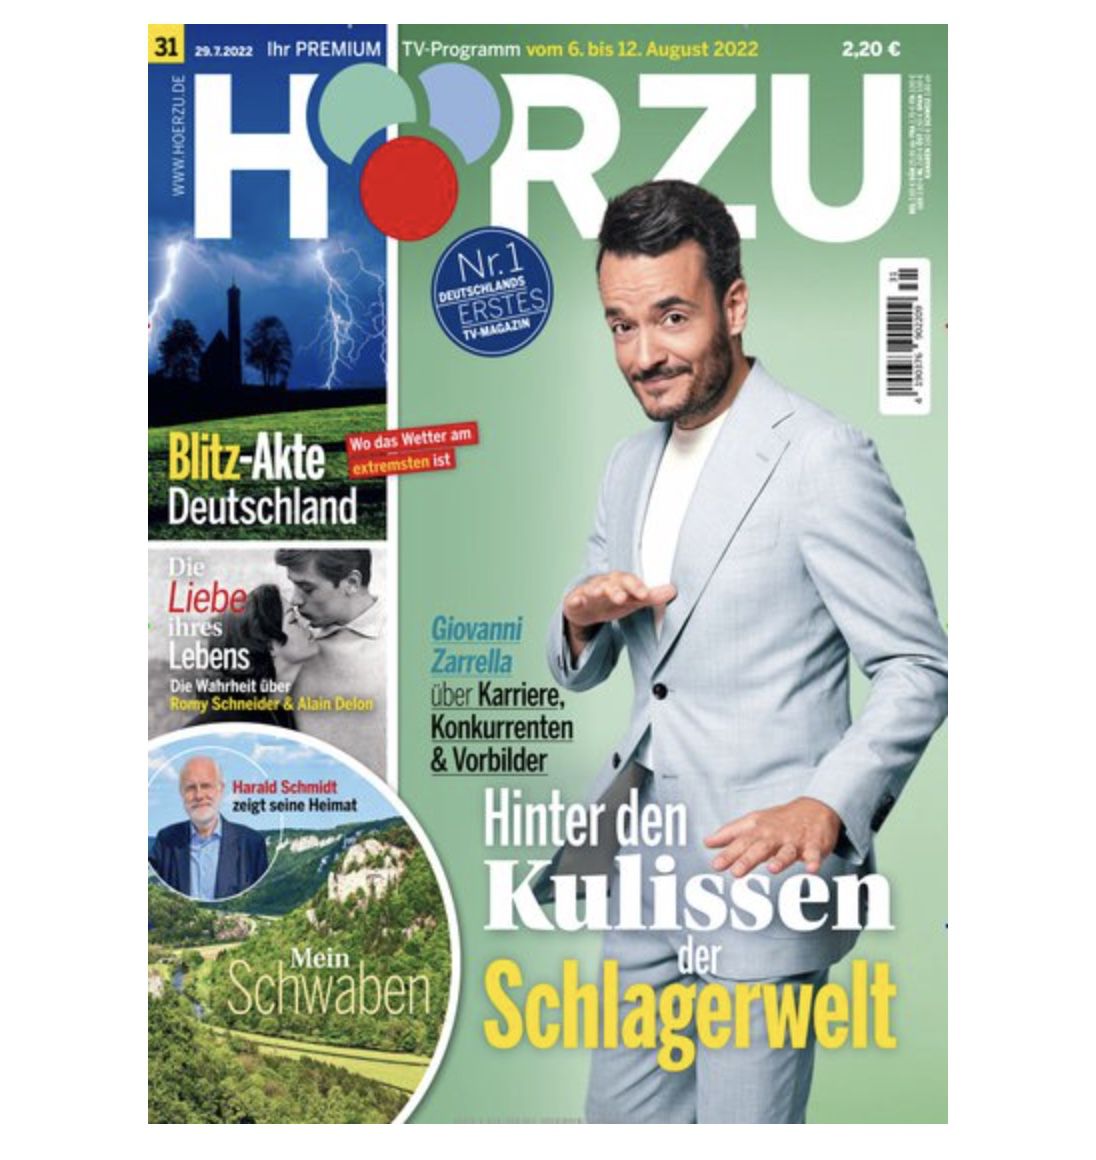 52 Ausgaben der HÖRZU TV Zeitschrift für 125€ + Prämie 100€ Bestchoice oder 95€ Amazon Gutschein